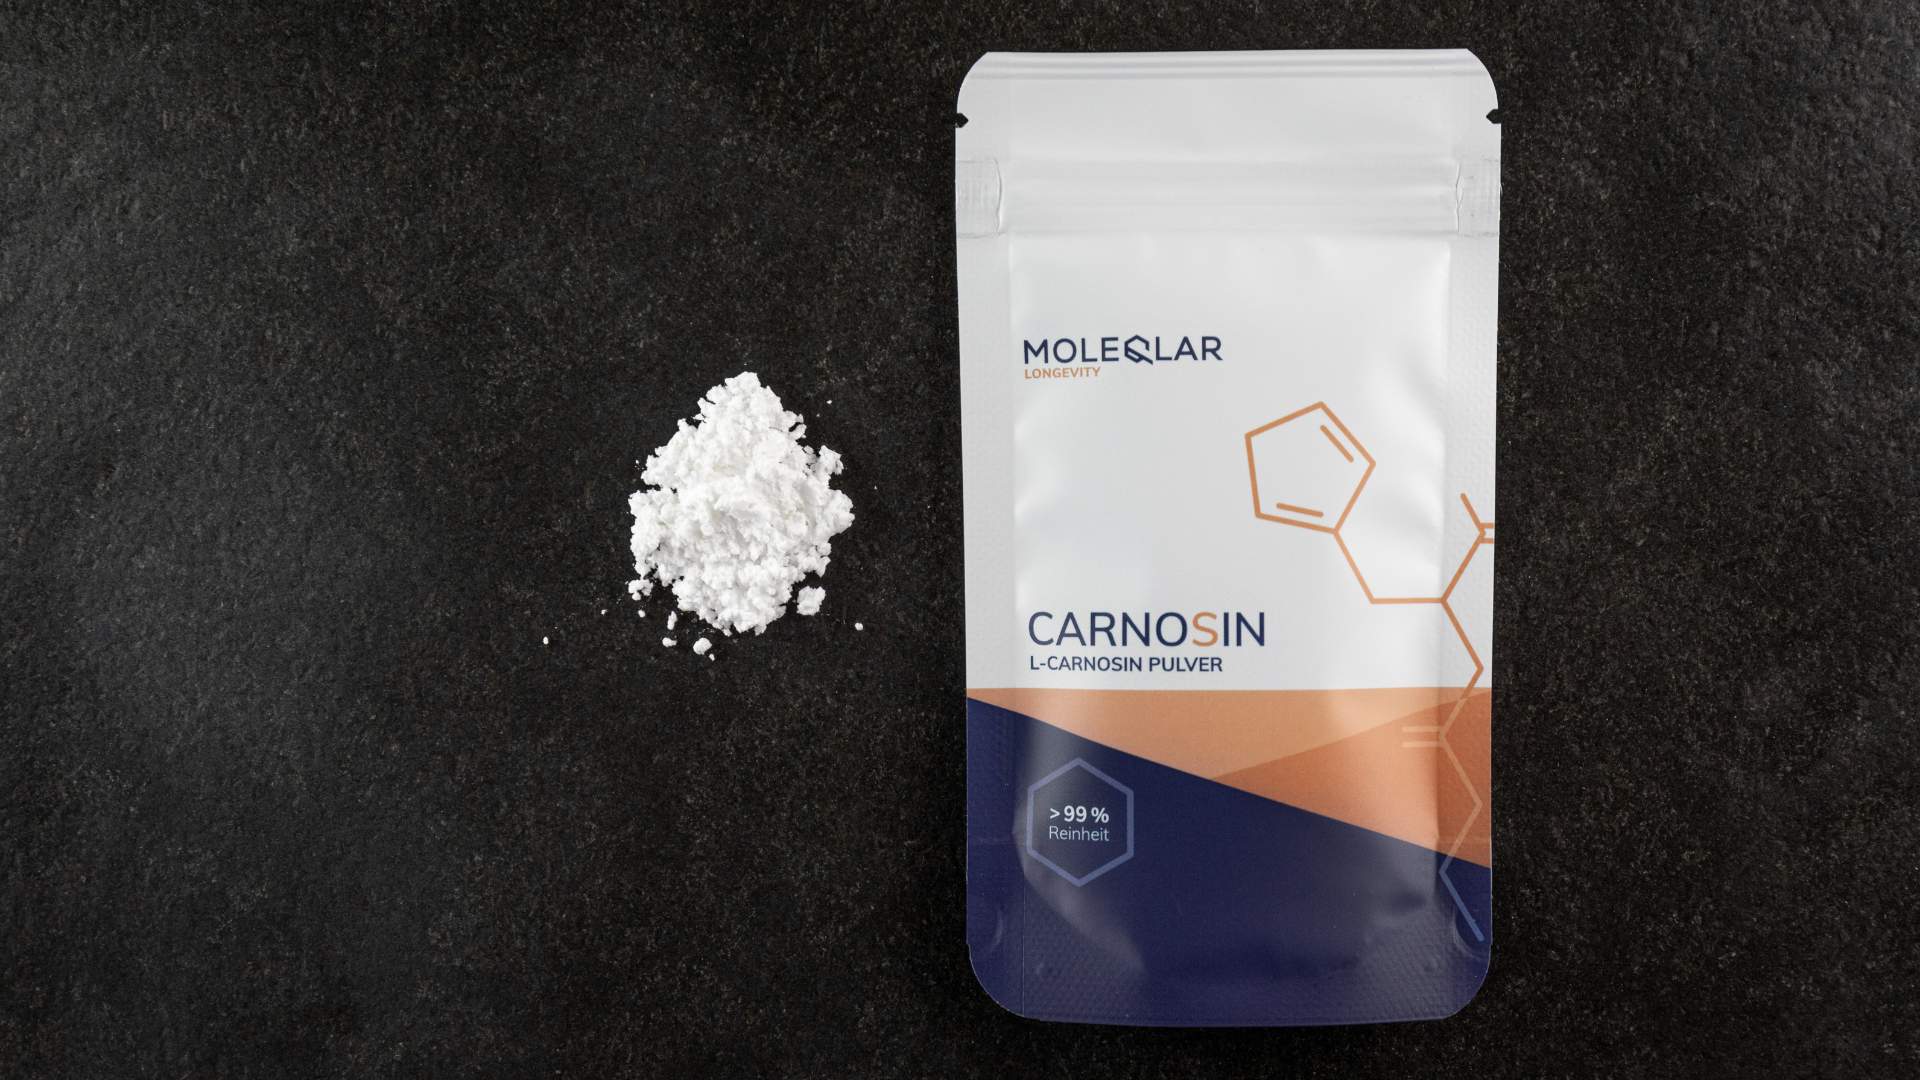 Carnosine Powder Moleqlar Sugar Stabilizer Kit